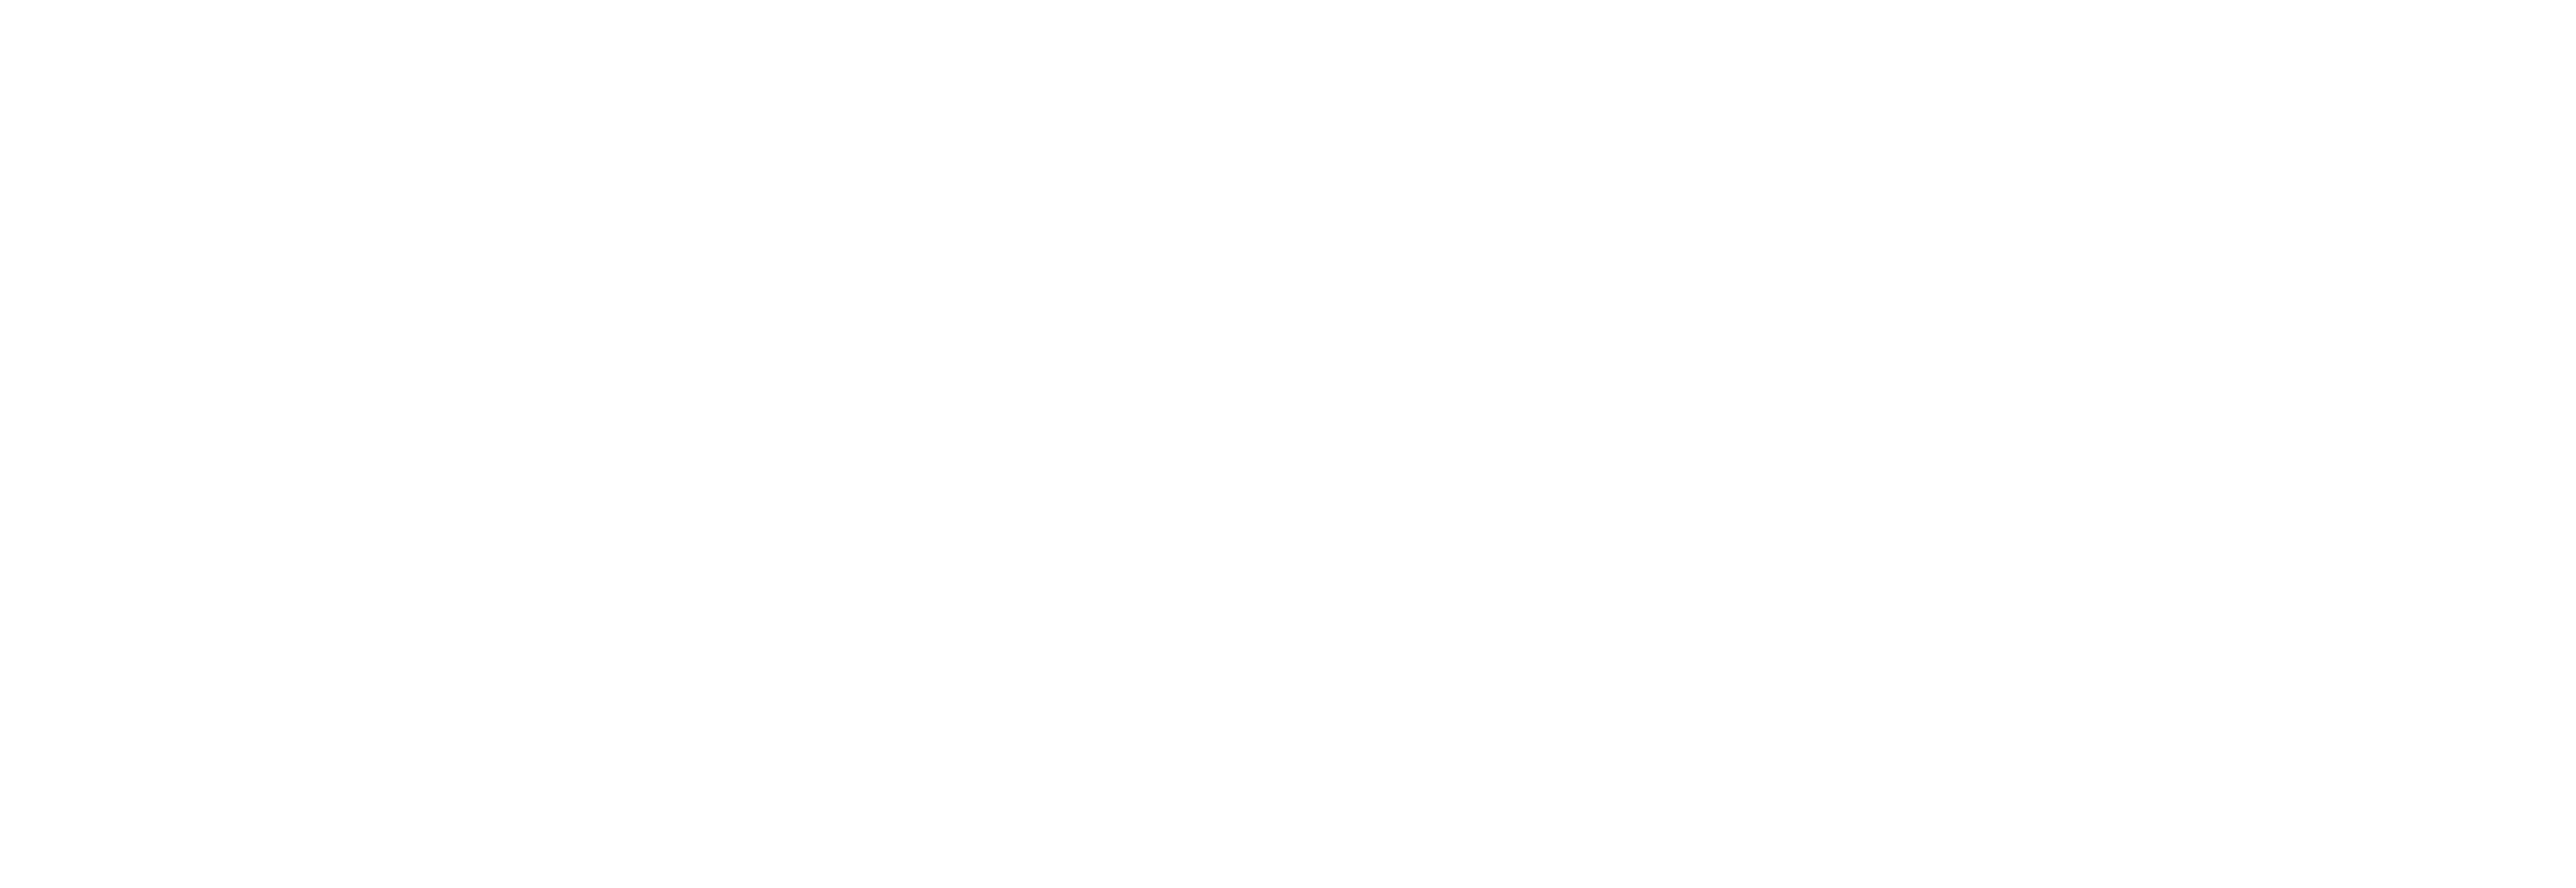 CIGen logo white